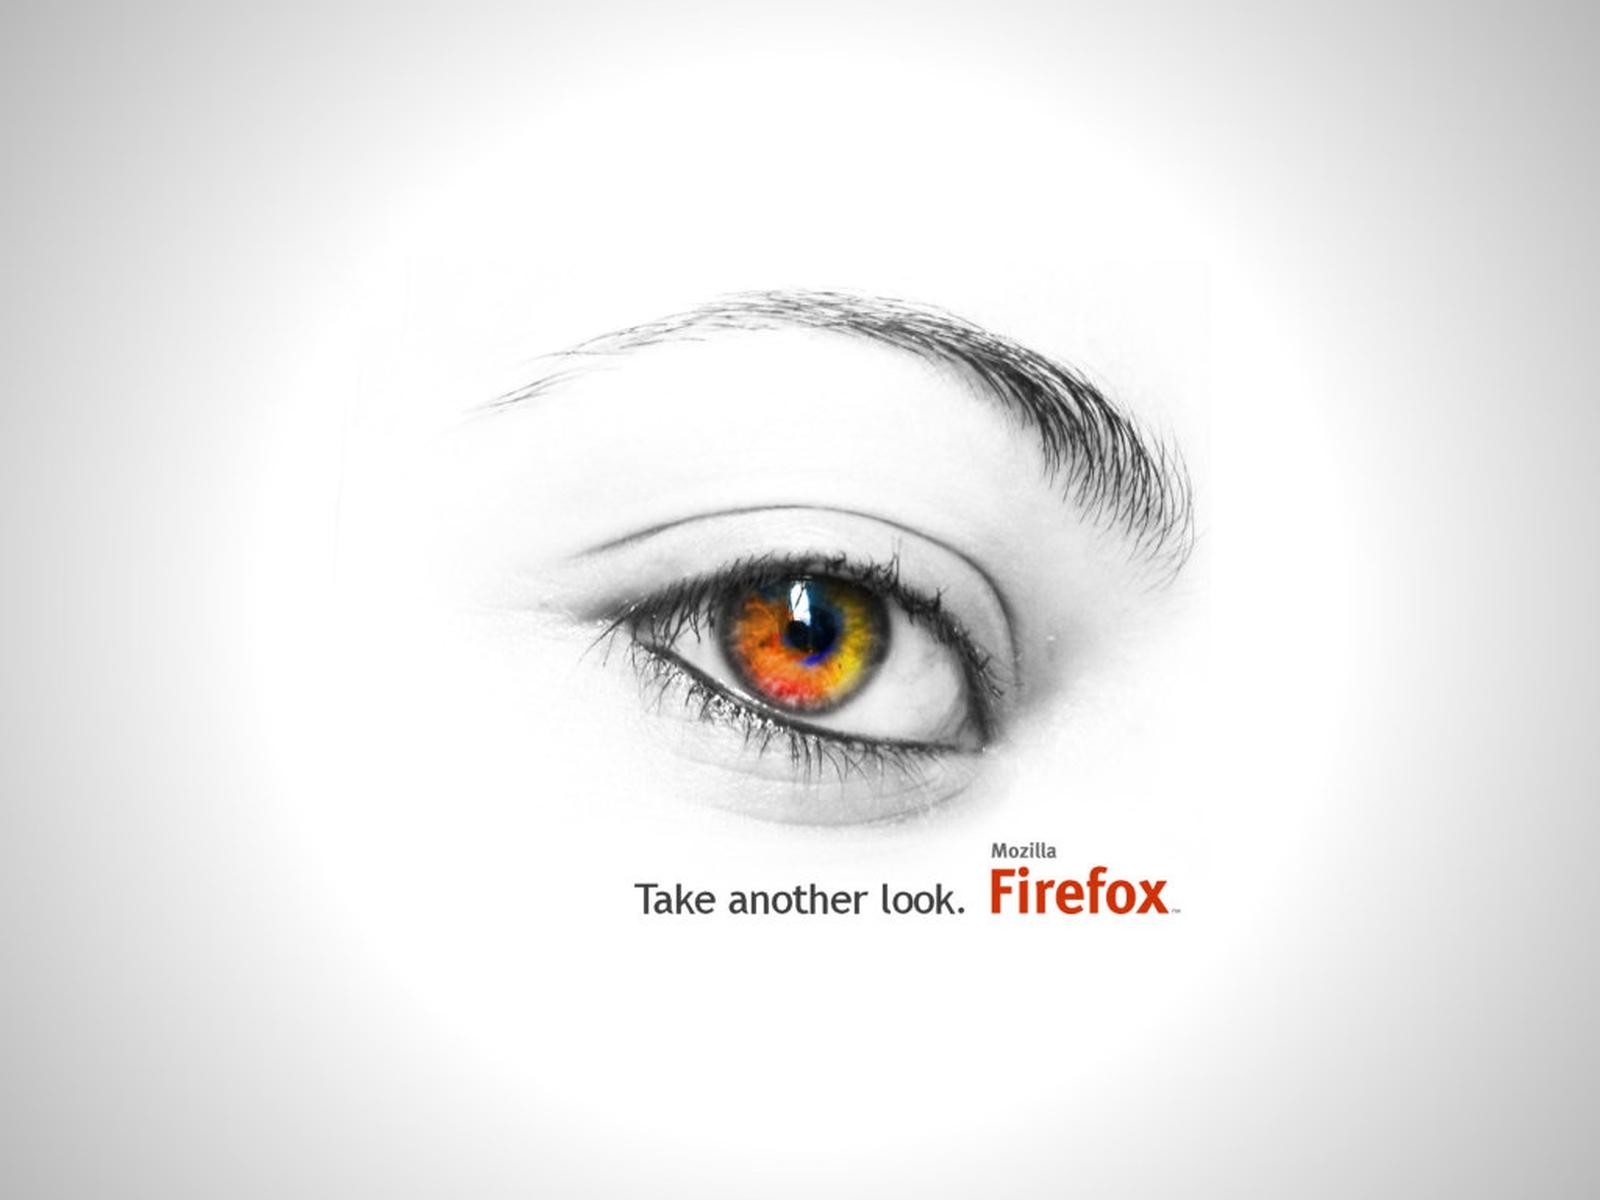 Скачать обои бесплатно Технологии, Fire Fox картинка на рабочий стол ПК